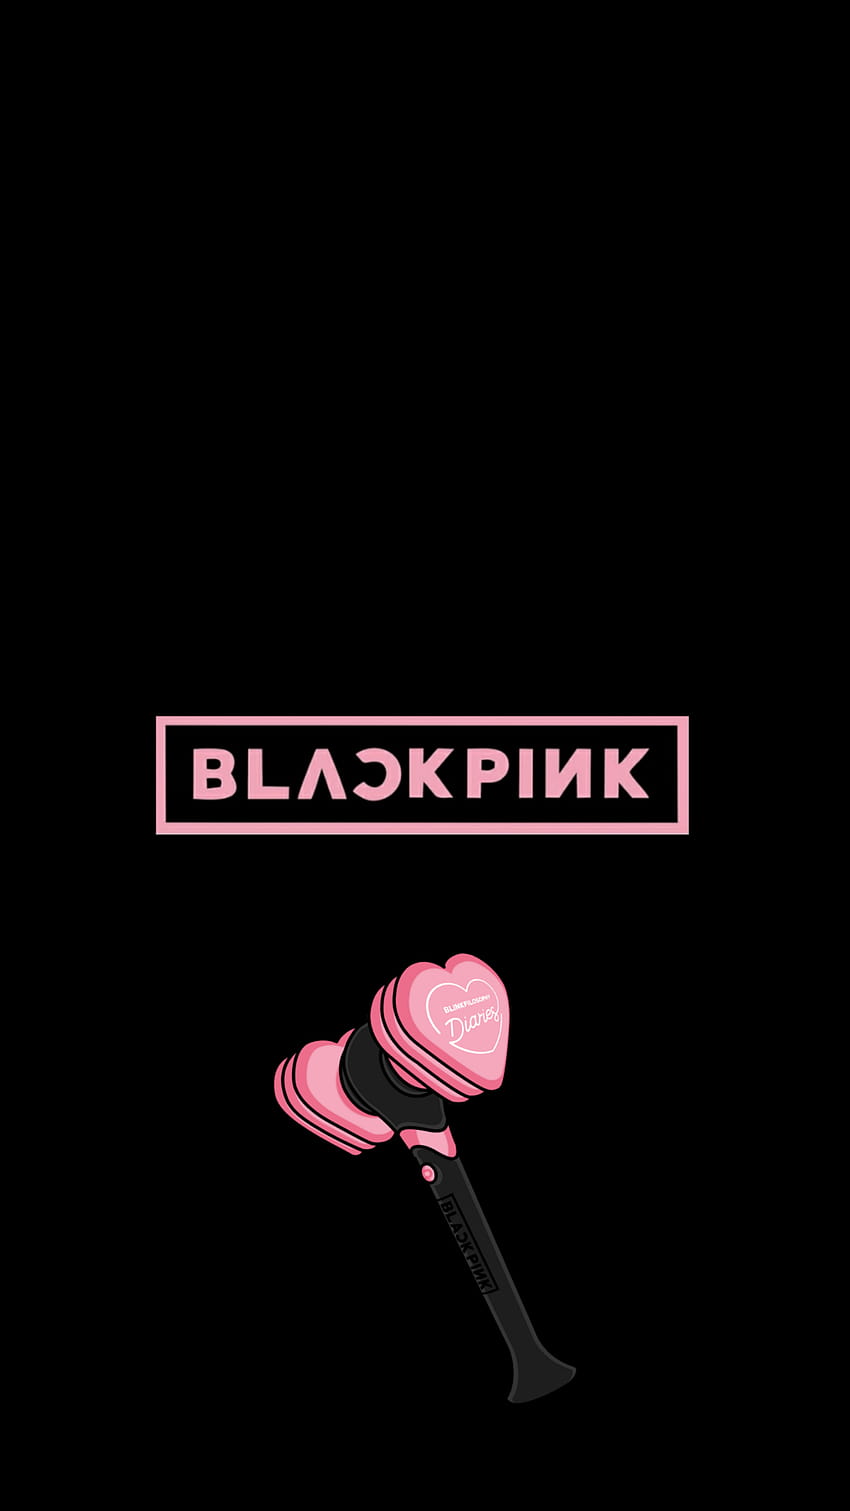 Blackpink logo wallpaper  Blackpink